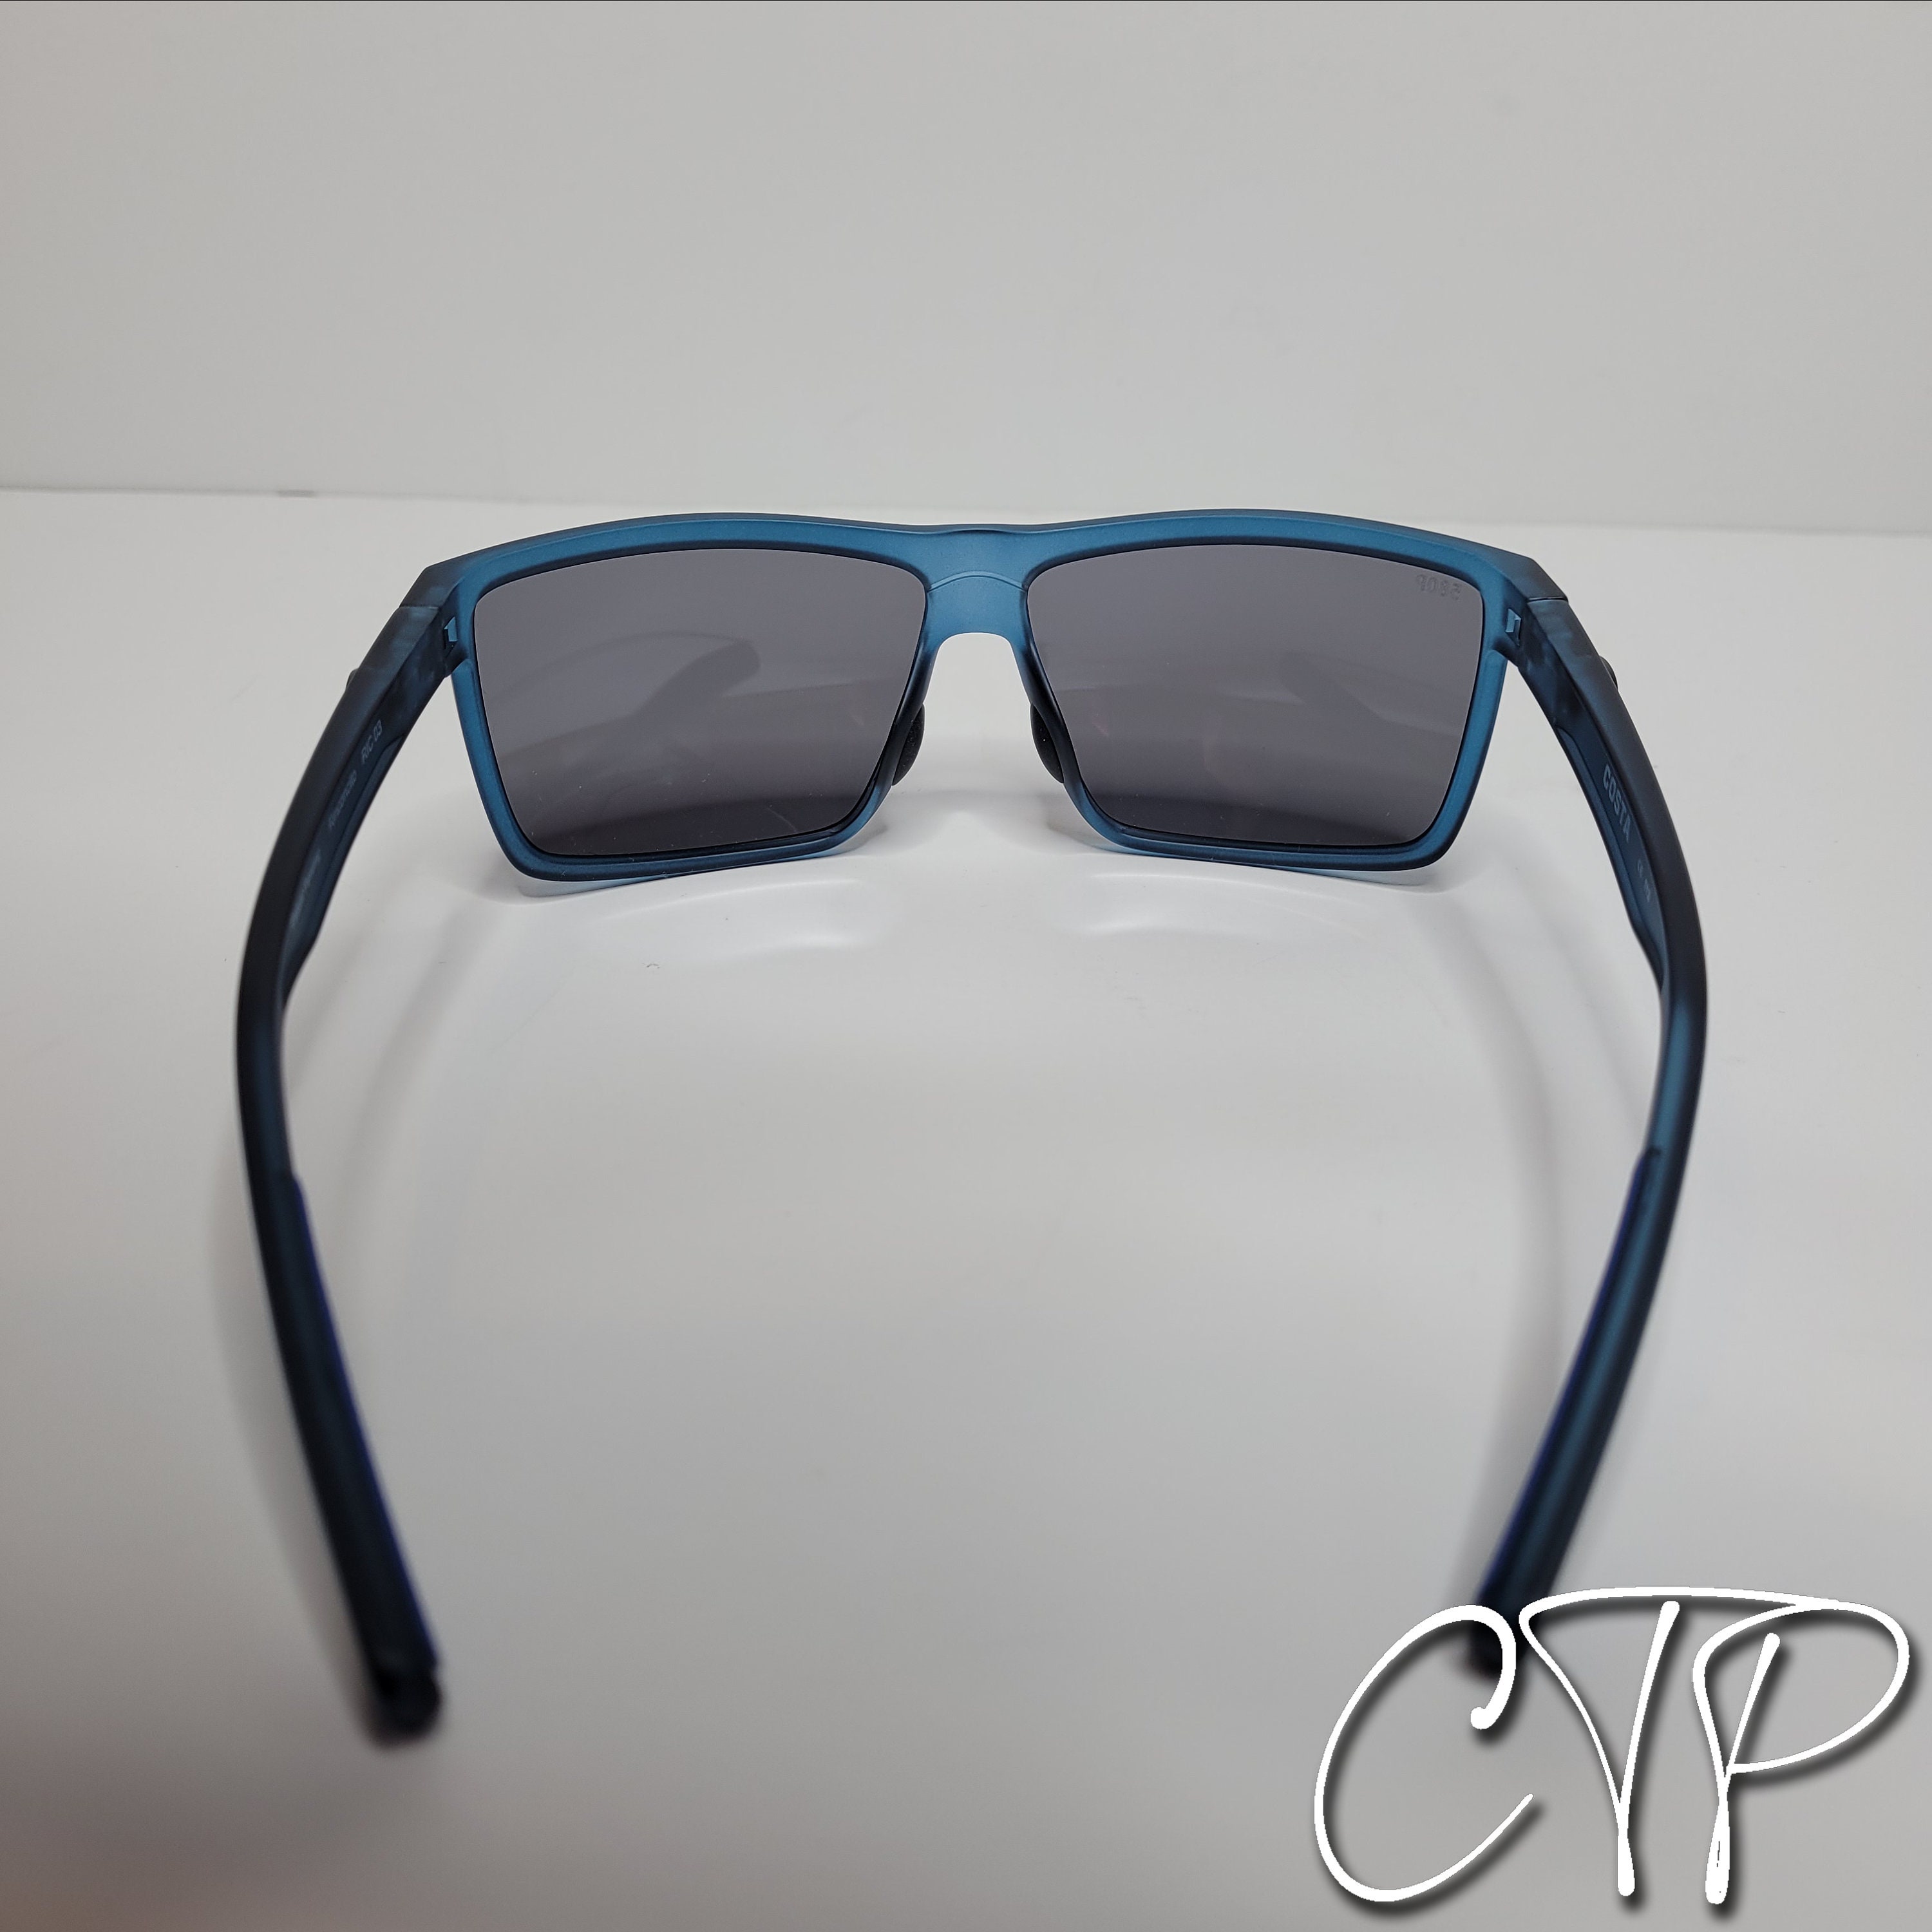 Costa Del Mar Rinconcito Sunglasses Polarized 580P Lenses Clear Blue - Etsy